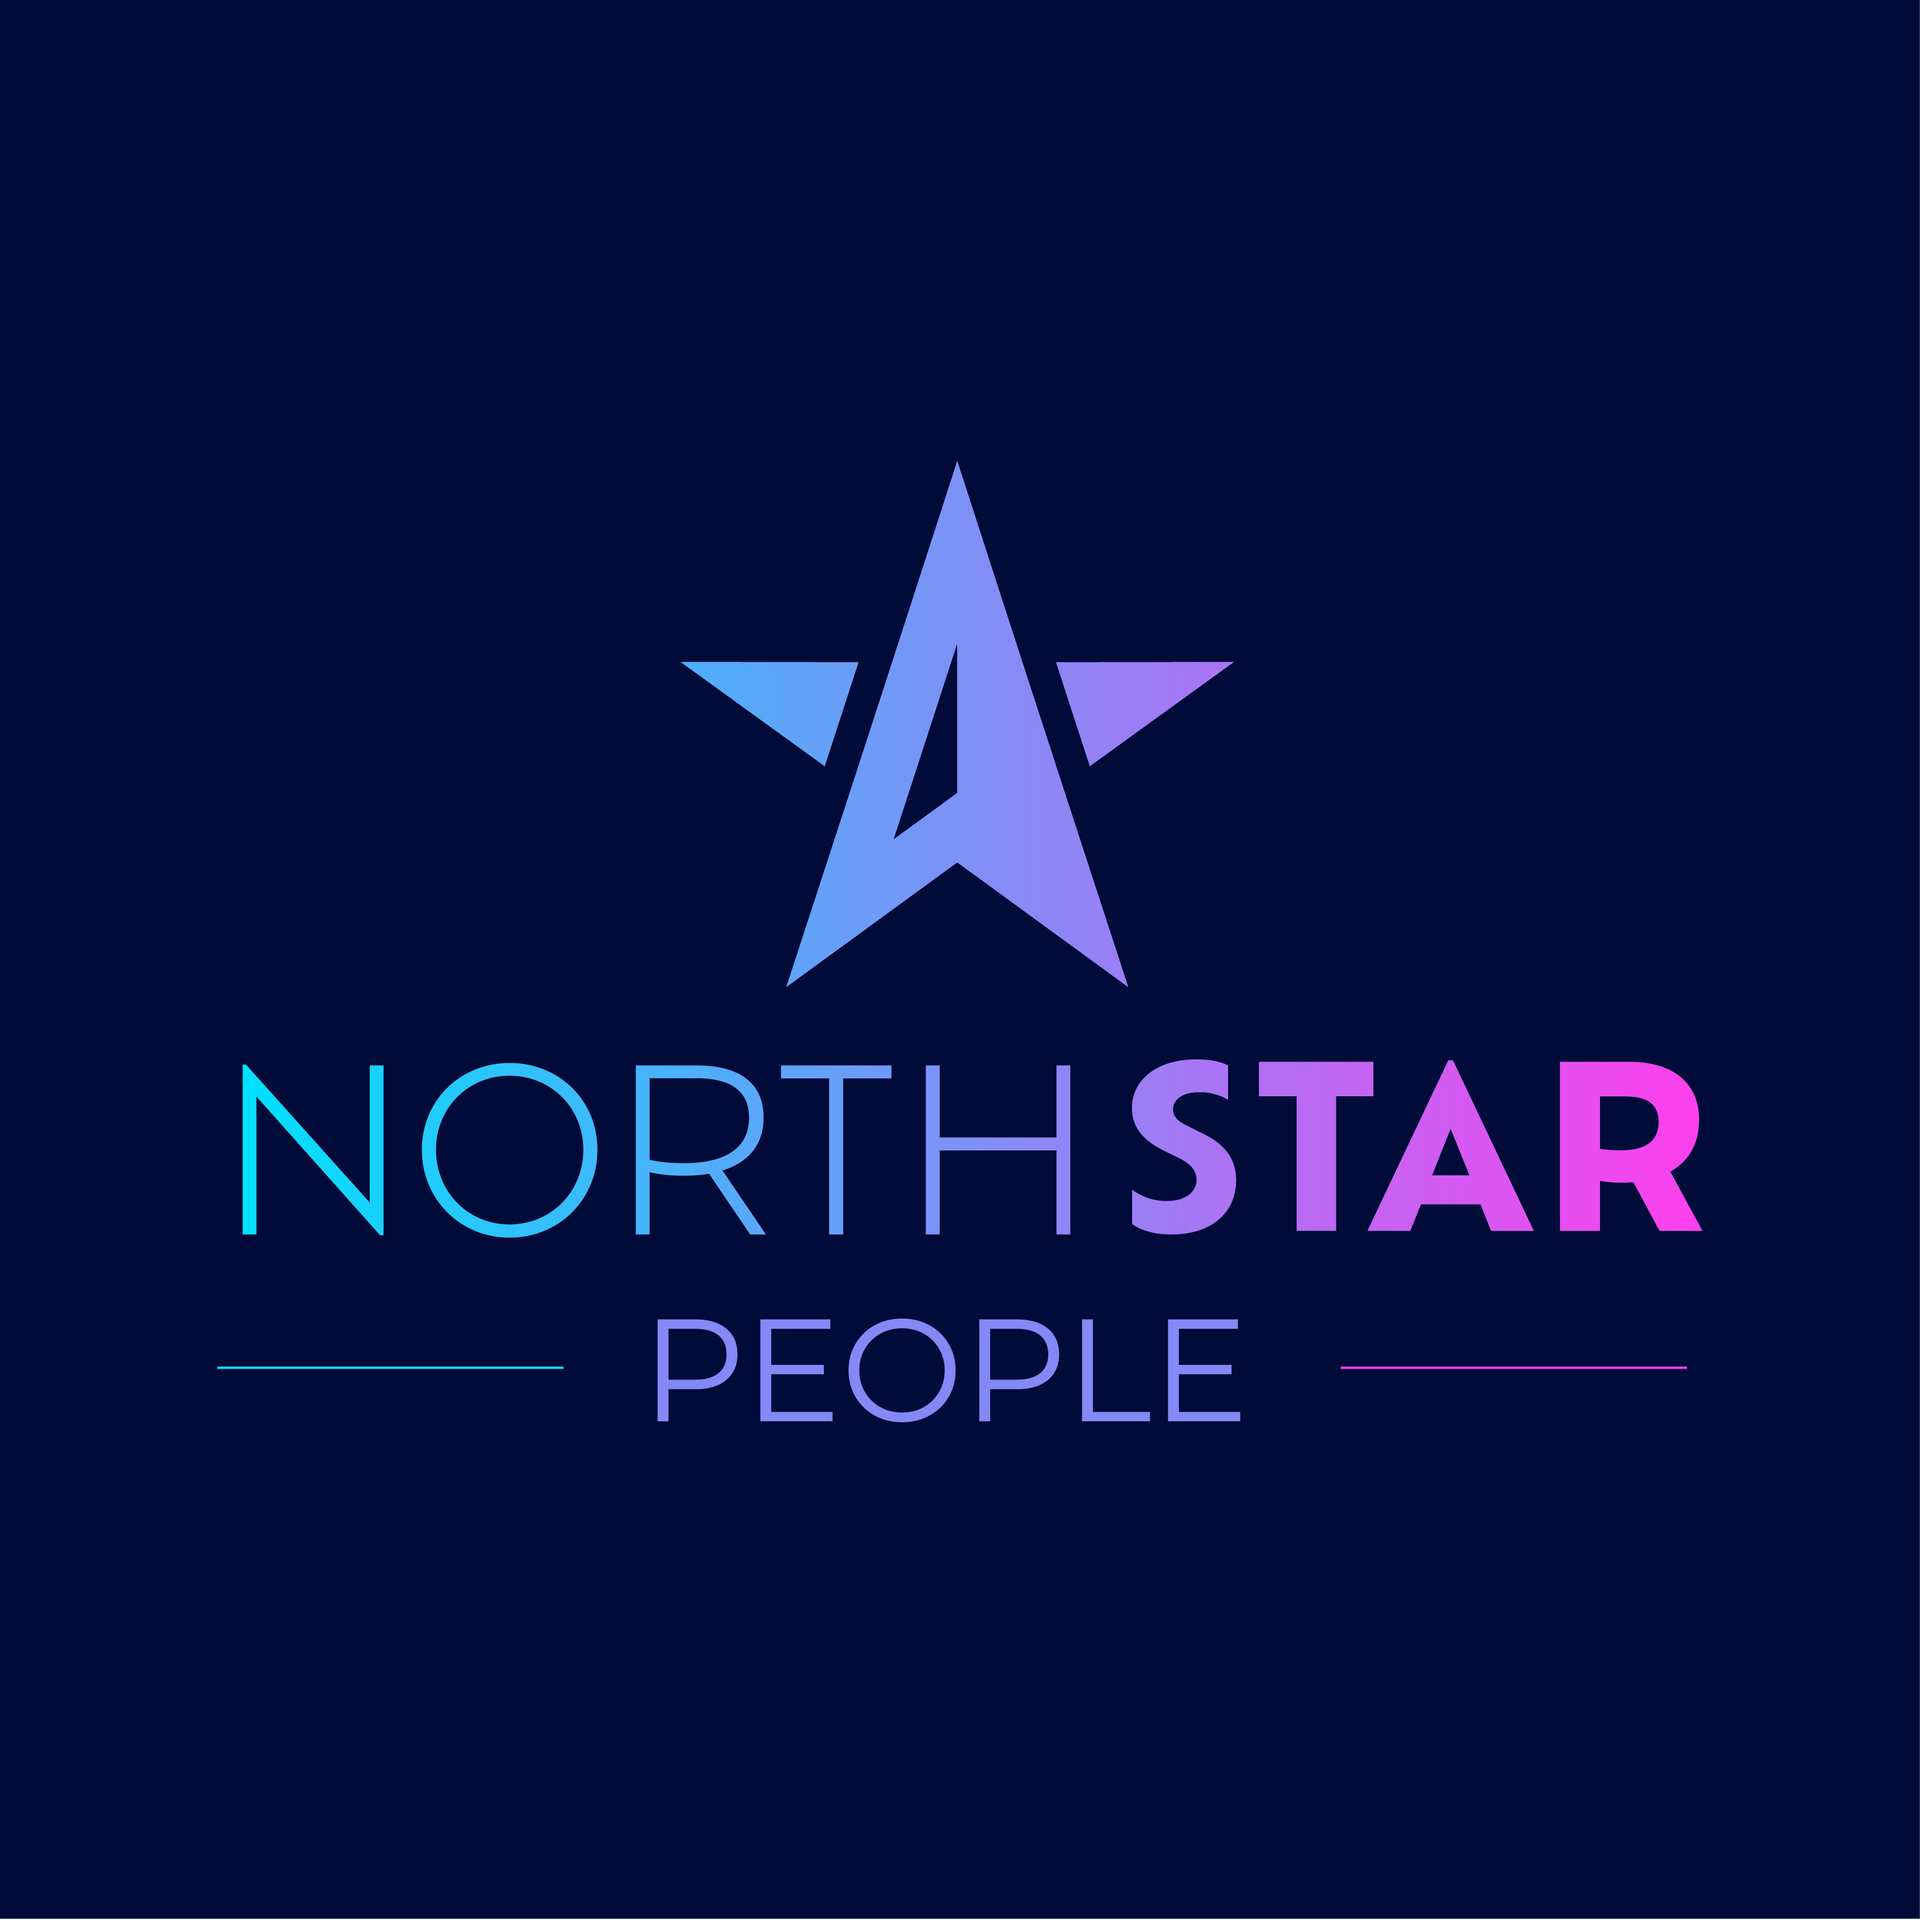 NorthStar People